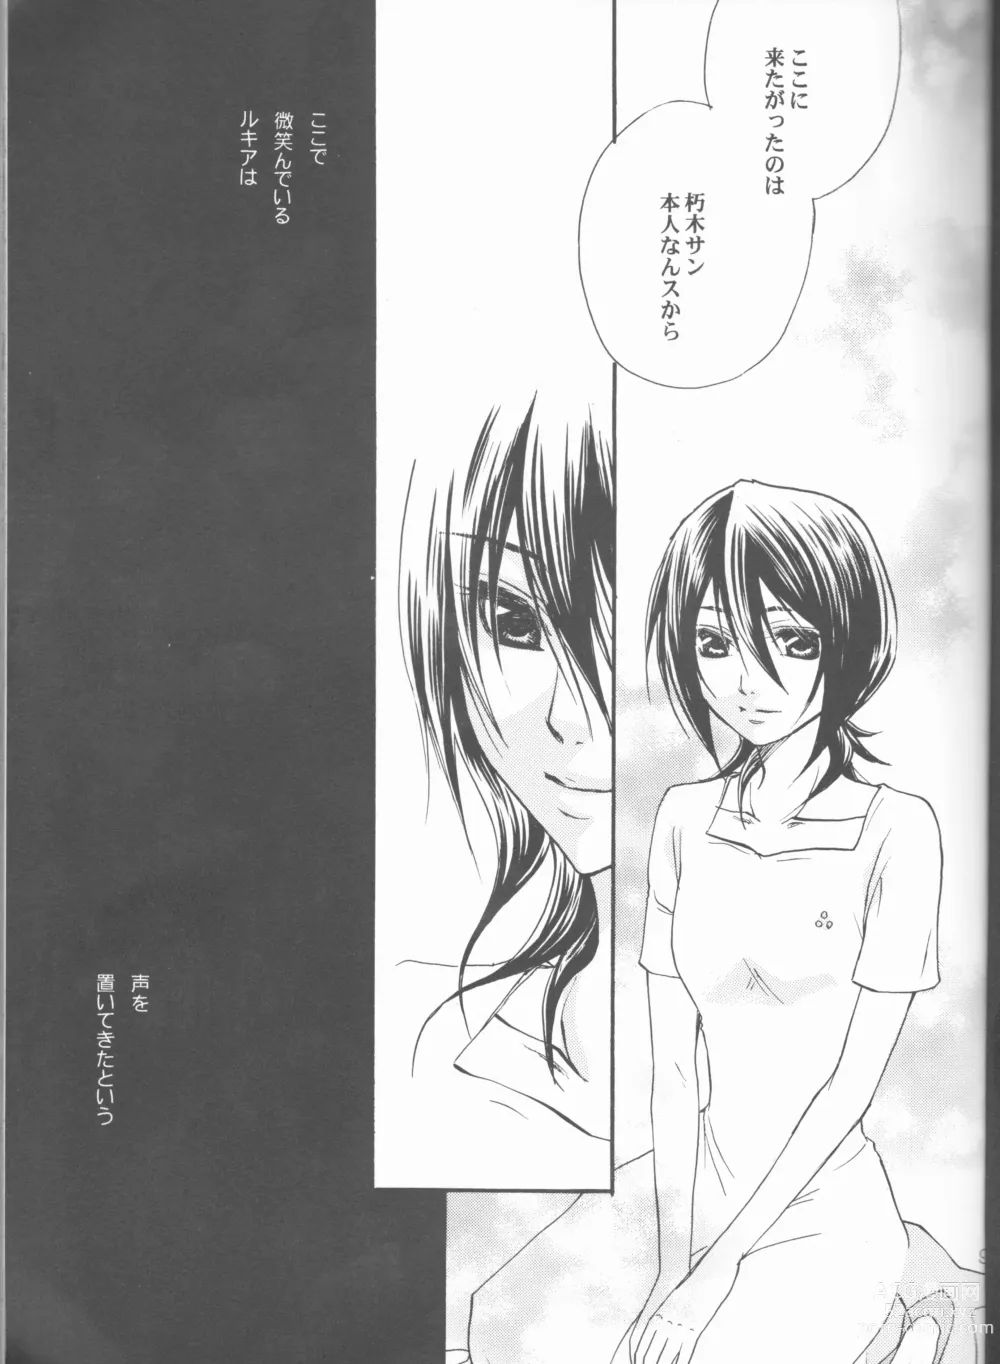 Page 9 of doujinshi Kimi o suki ni natte hajimete no natsu ga kuru.